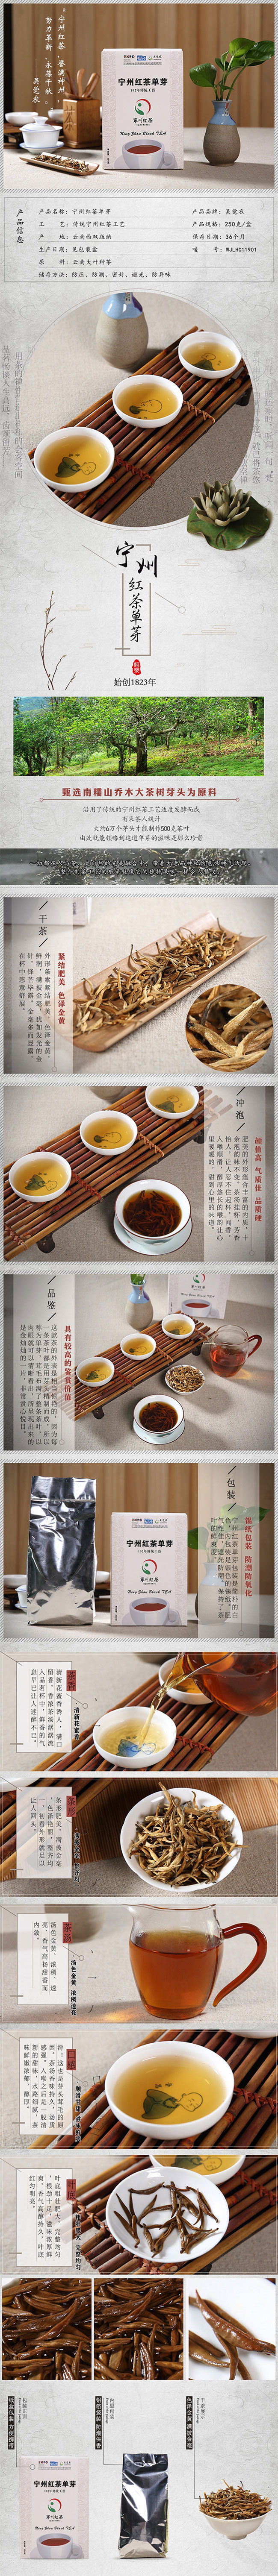 吴觉农 茶叶 宁州红茶 古树单芽 工夫红茶 2016年头春古树单芽(图1)